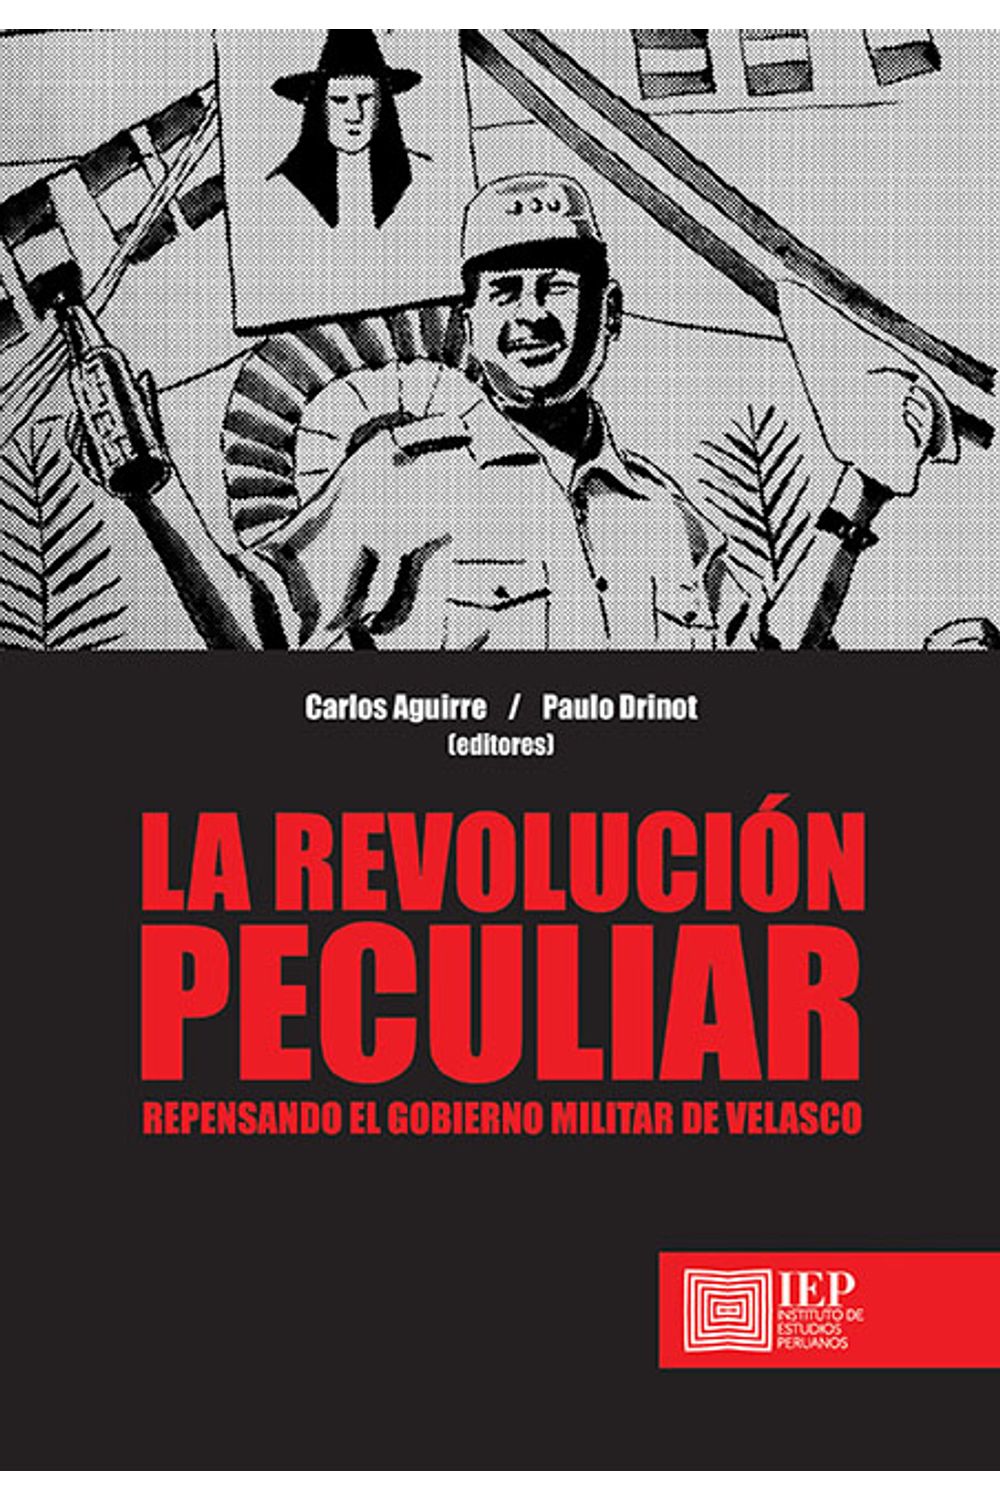 bm-la-revolucion-peculiar-instituto-de-estudios-peruanos-iep-9789972516924